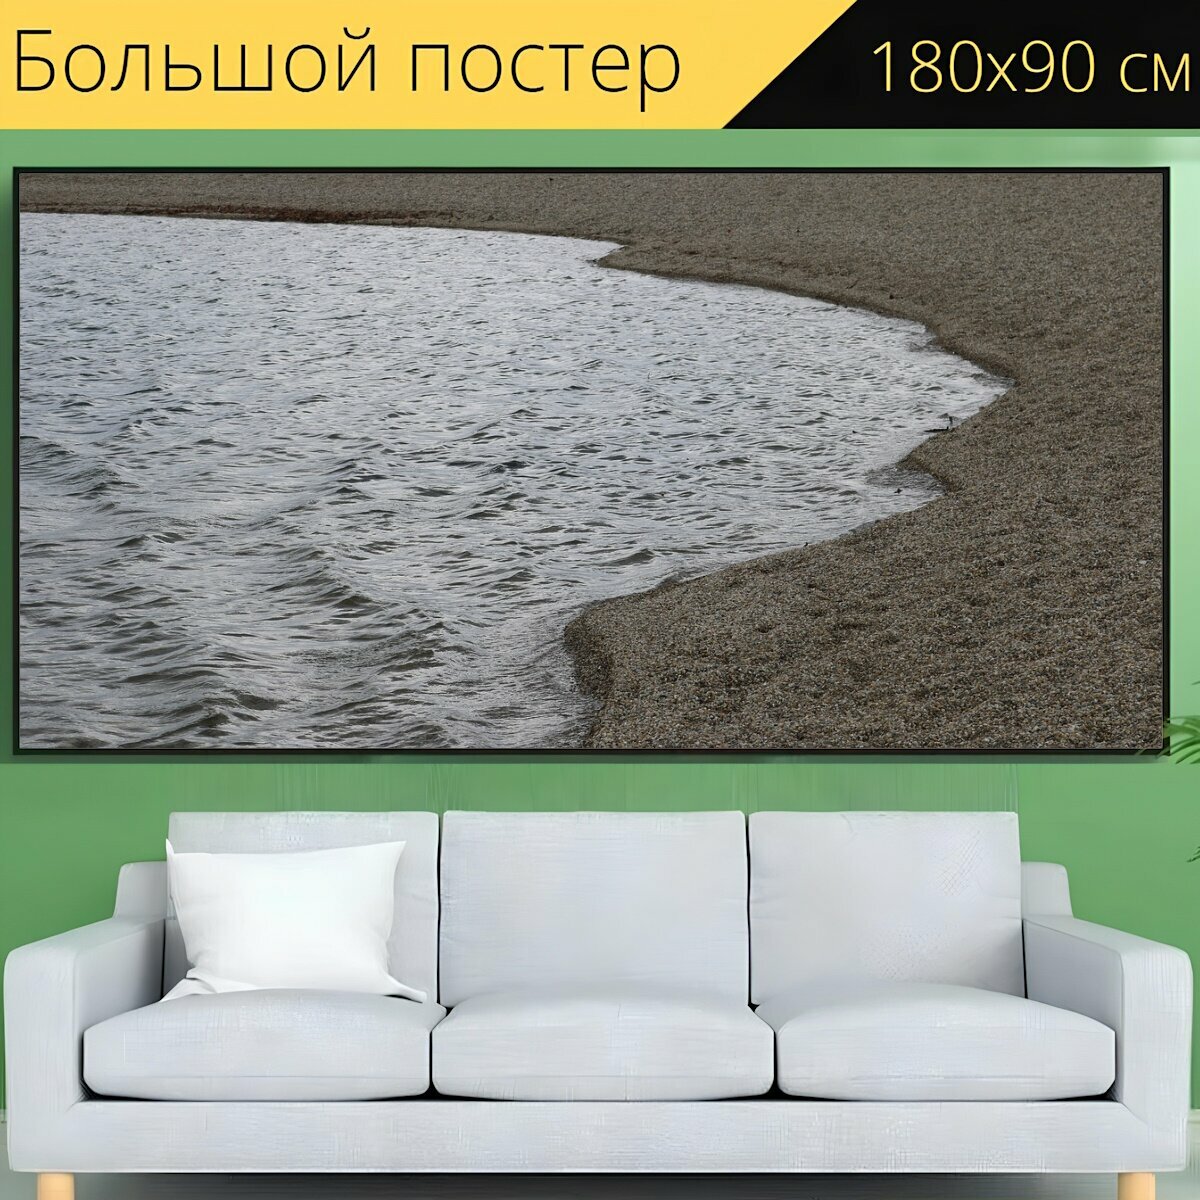 Большой постер "Песок, озеро, морской берег" 180 x 90 см. для интерьера